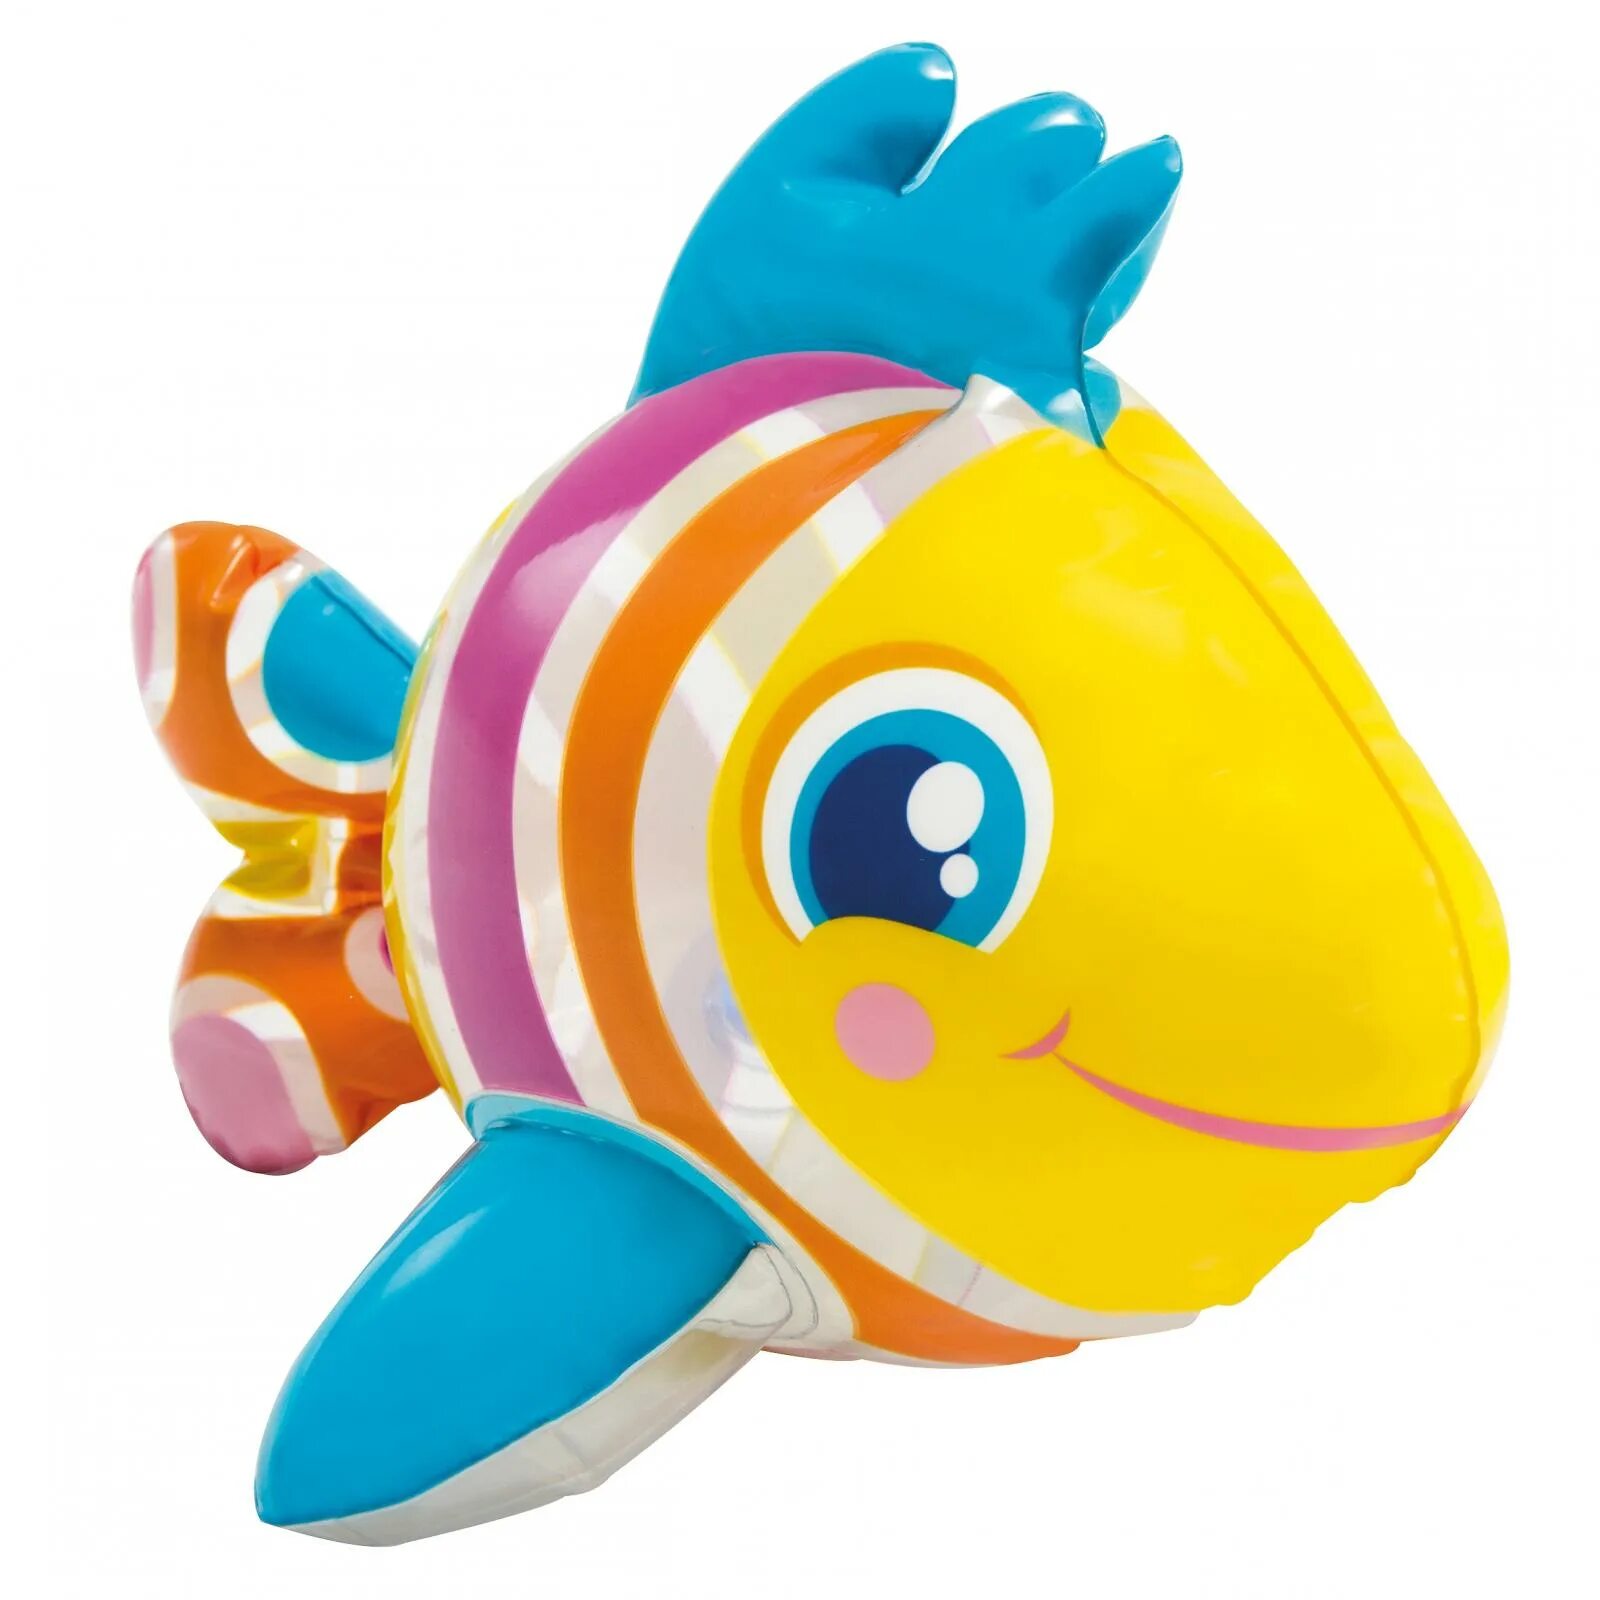 Надувные водные игрушки Intex 58590. Надувная игрушка Intex 58590. Рыбка.58590.Тропическая. Купить игрушку рыбки